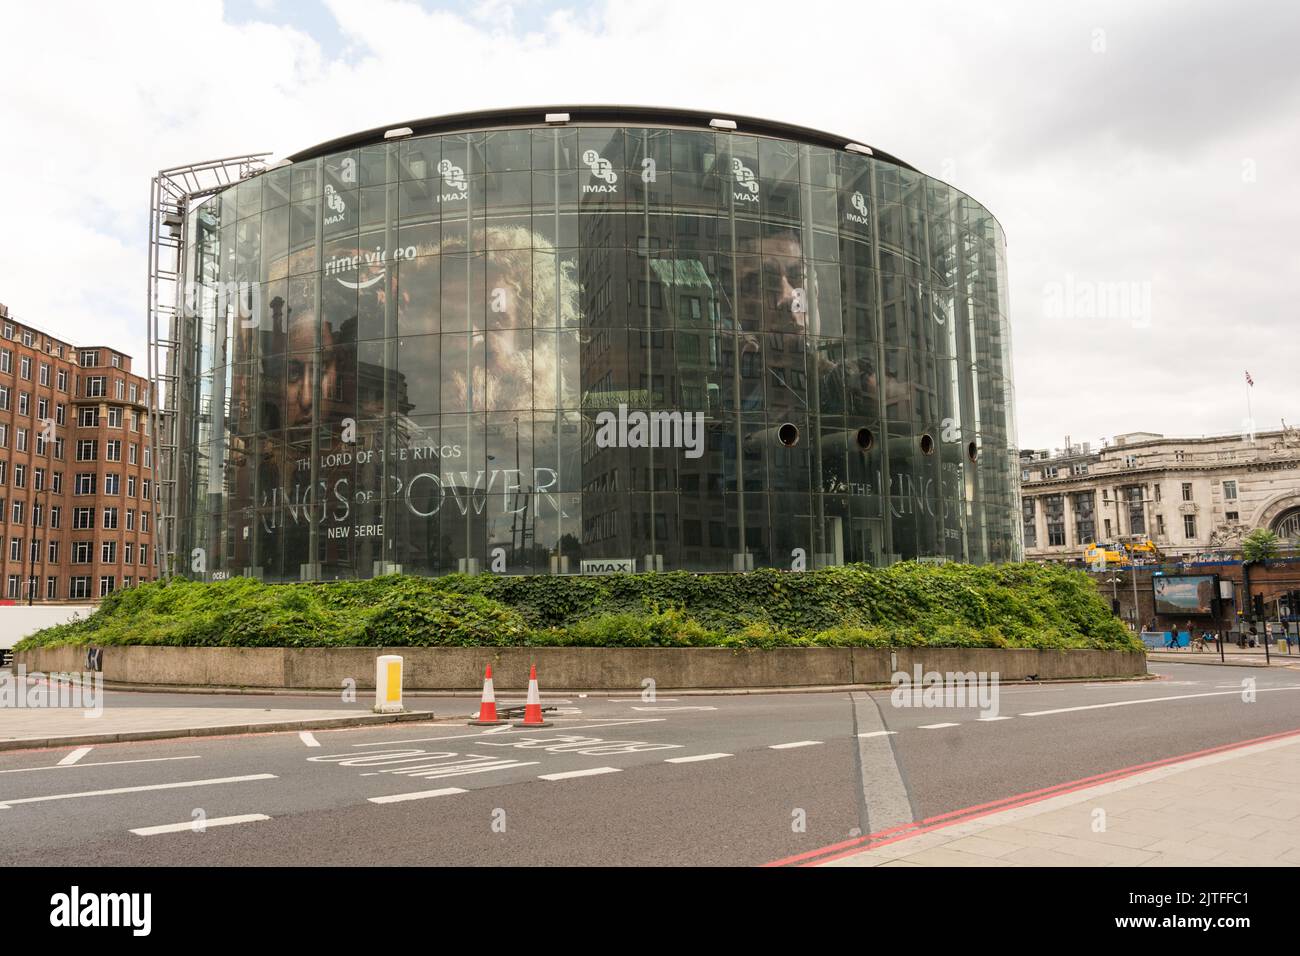 Imax Cinema on London's Southbank, Waterloo, Lambeth, London, England, UK Stock Photo